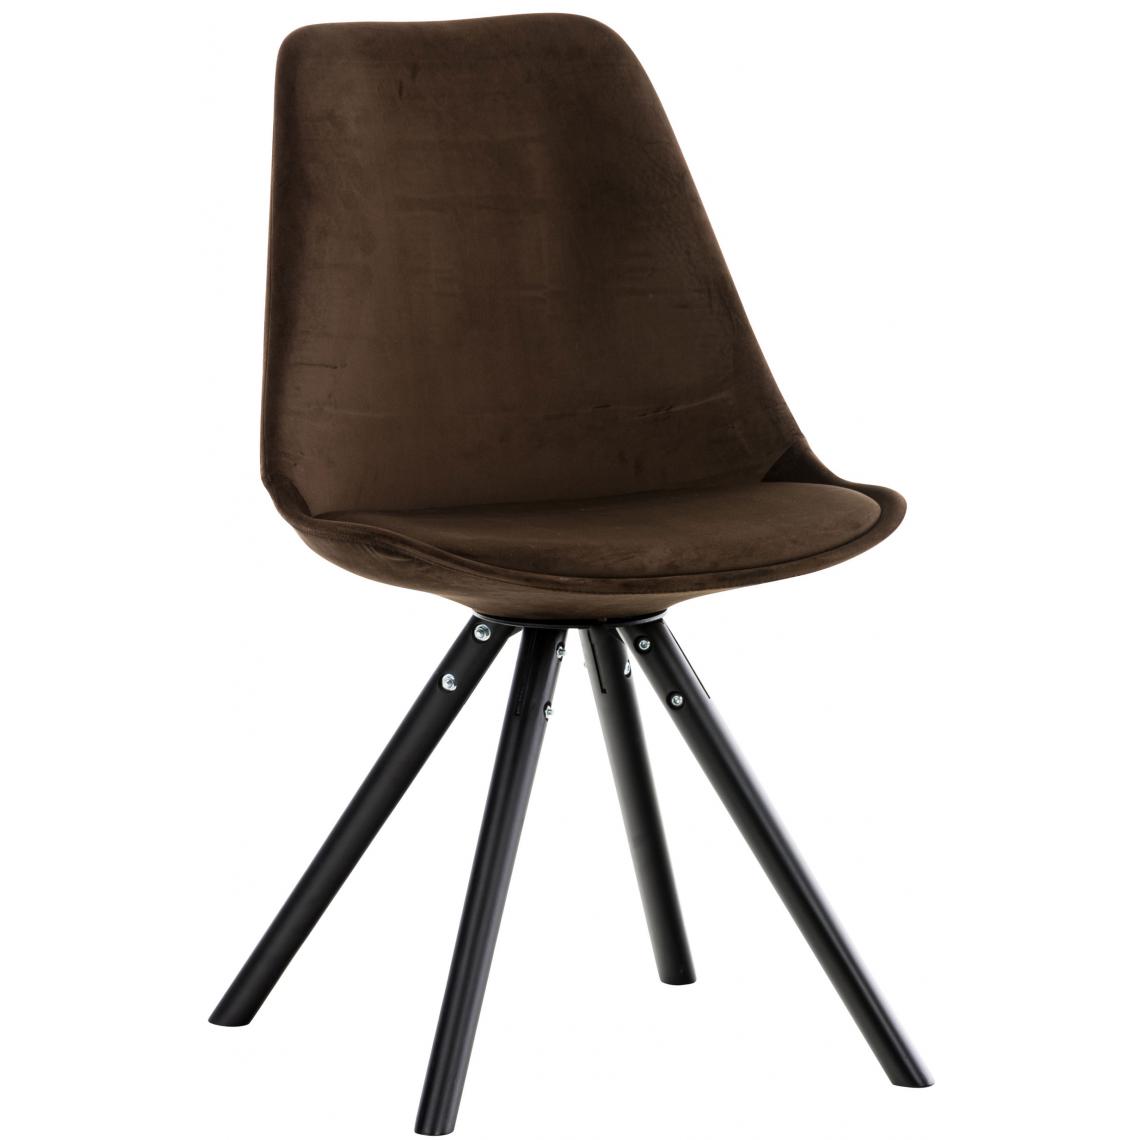 Icaverne - Chic Chaise ronde en velours categorie Manille noir couleur marron - Chaises